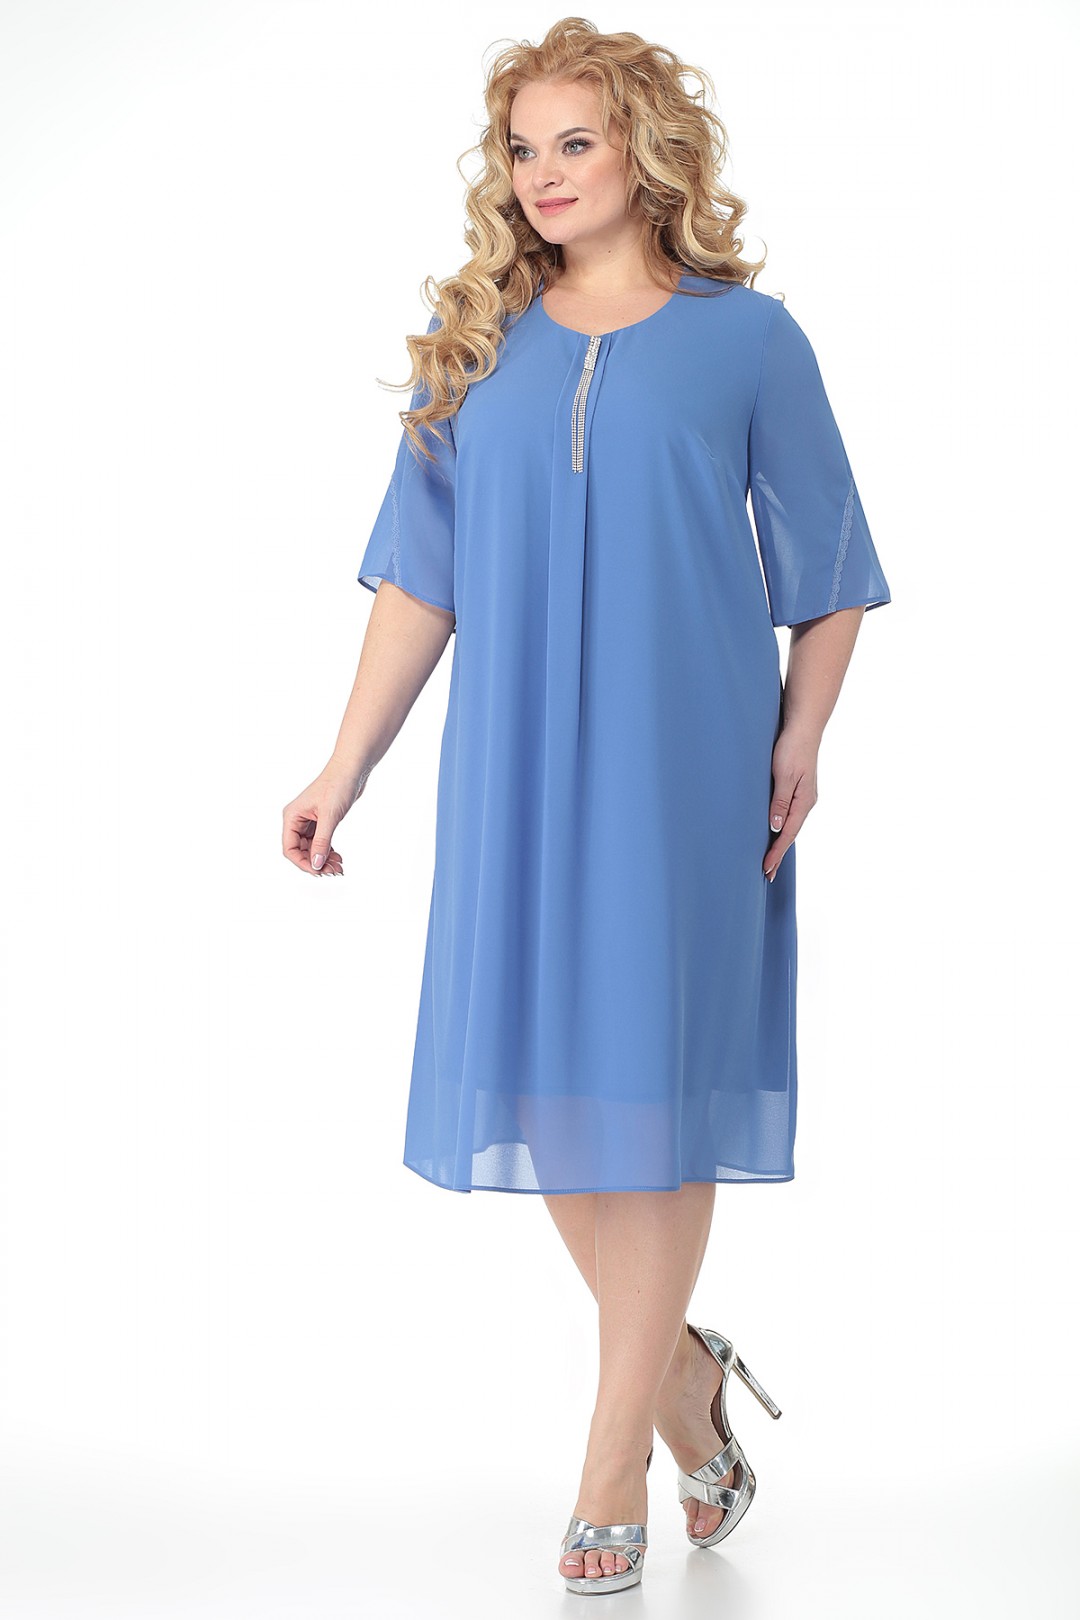 Платье ALGRANDA (Новелла Шарм) 3700 голубой